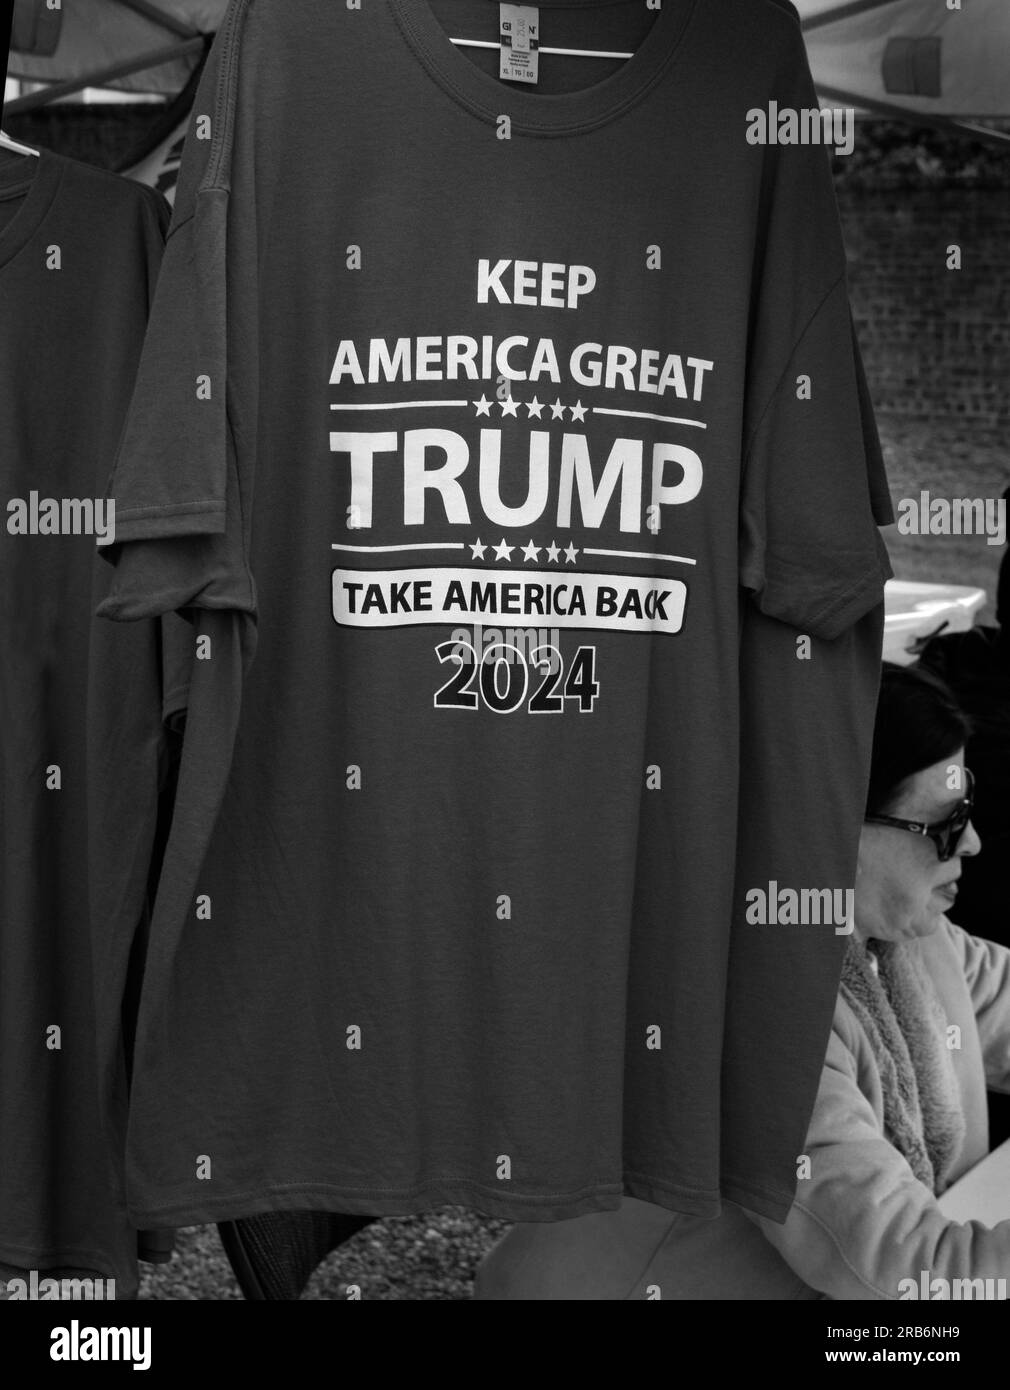 Les partisans de l'ancien président américain Donald Trump vendent des T-shirts pour promouvoir l'élection de Trump en 2024 lors d'un événement public à Abingdon, Virginie, États-Unis Banque D'Images